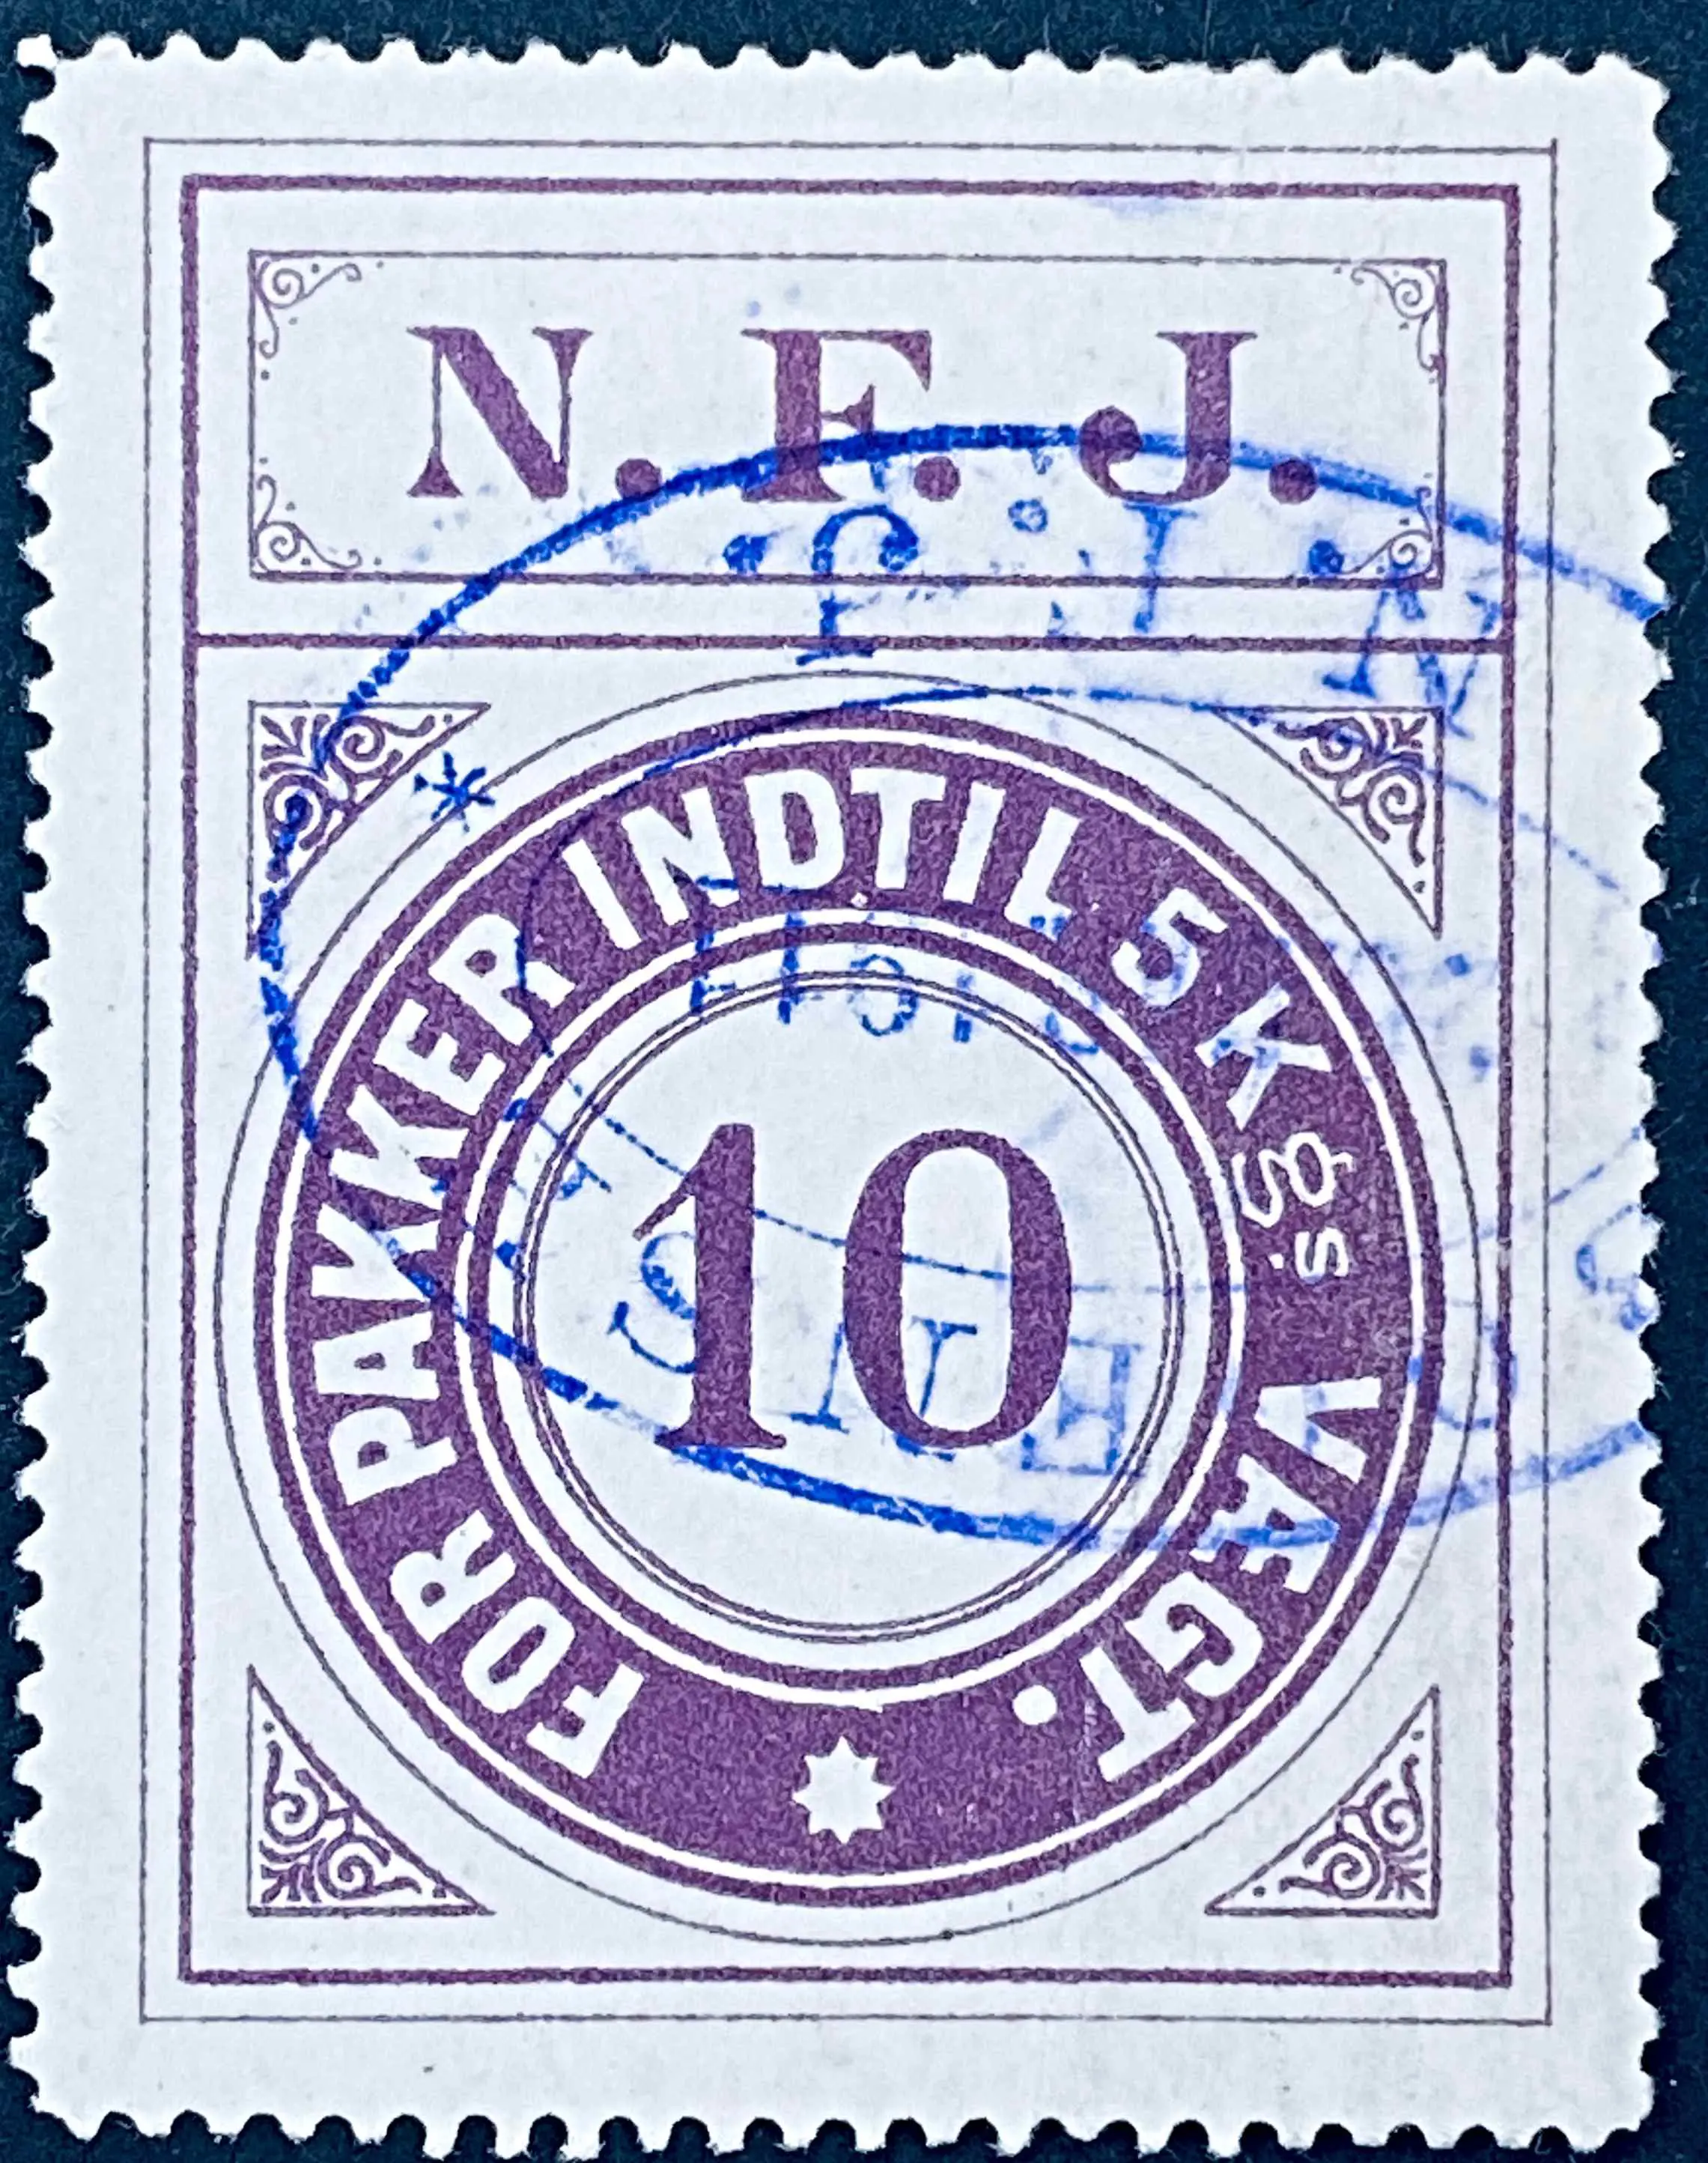 NFJ 5 - 10 Øre - Violet.